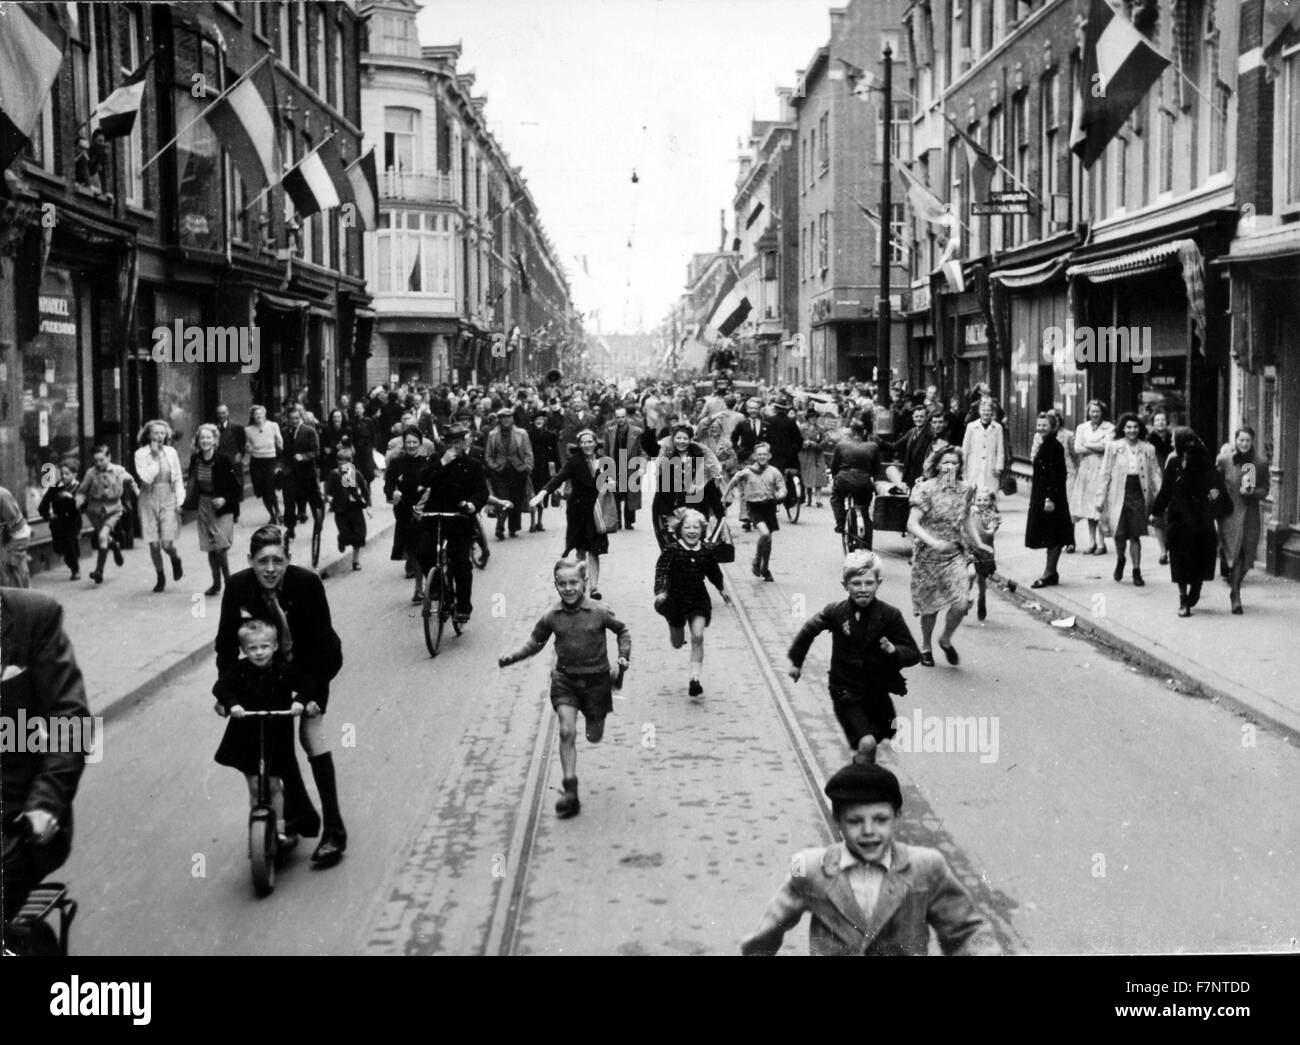 Foto aufgenommen am Tag der Befreiung in Holland. Tag der Befreiung markiert das Ende der Besetzung durch Nazi-Deutschland während des zweiten Weltkriegs. Datiert 1945 Stockfoto